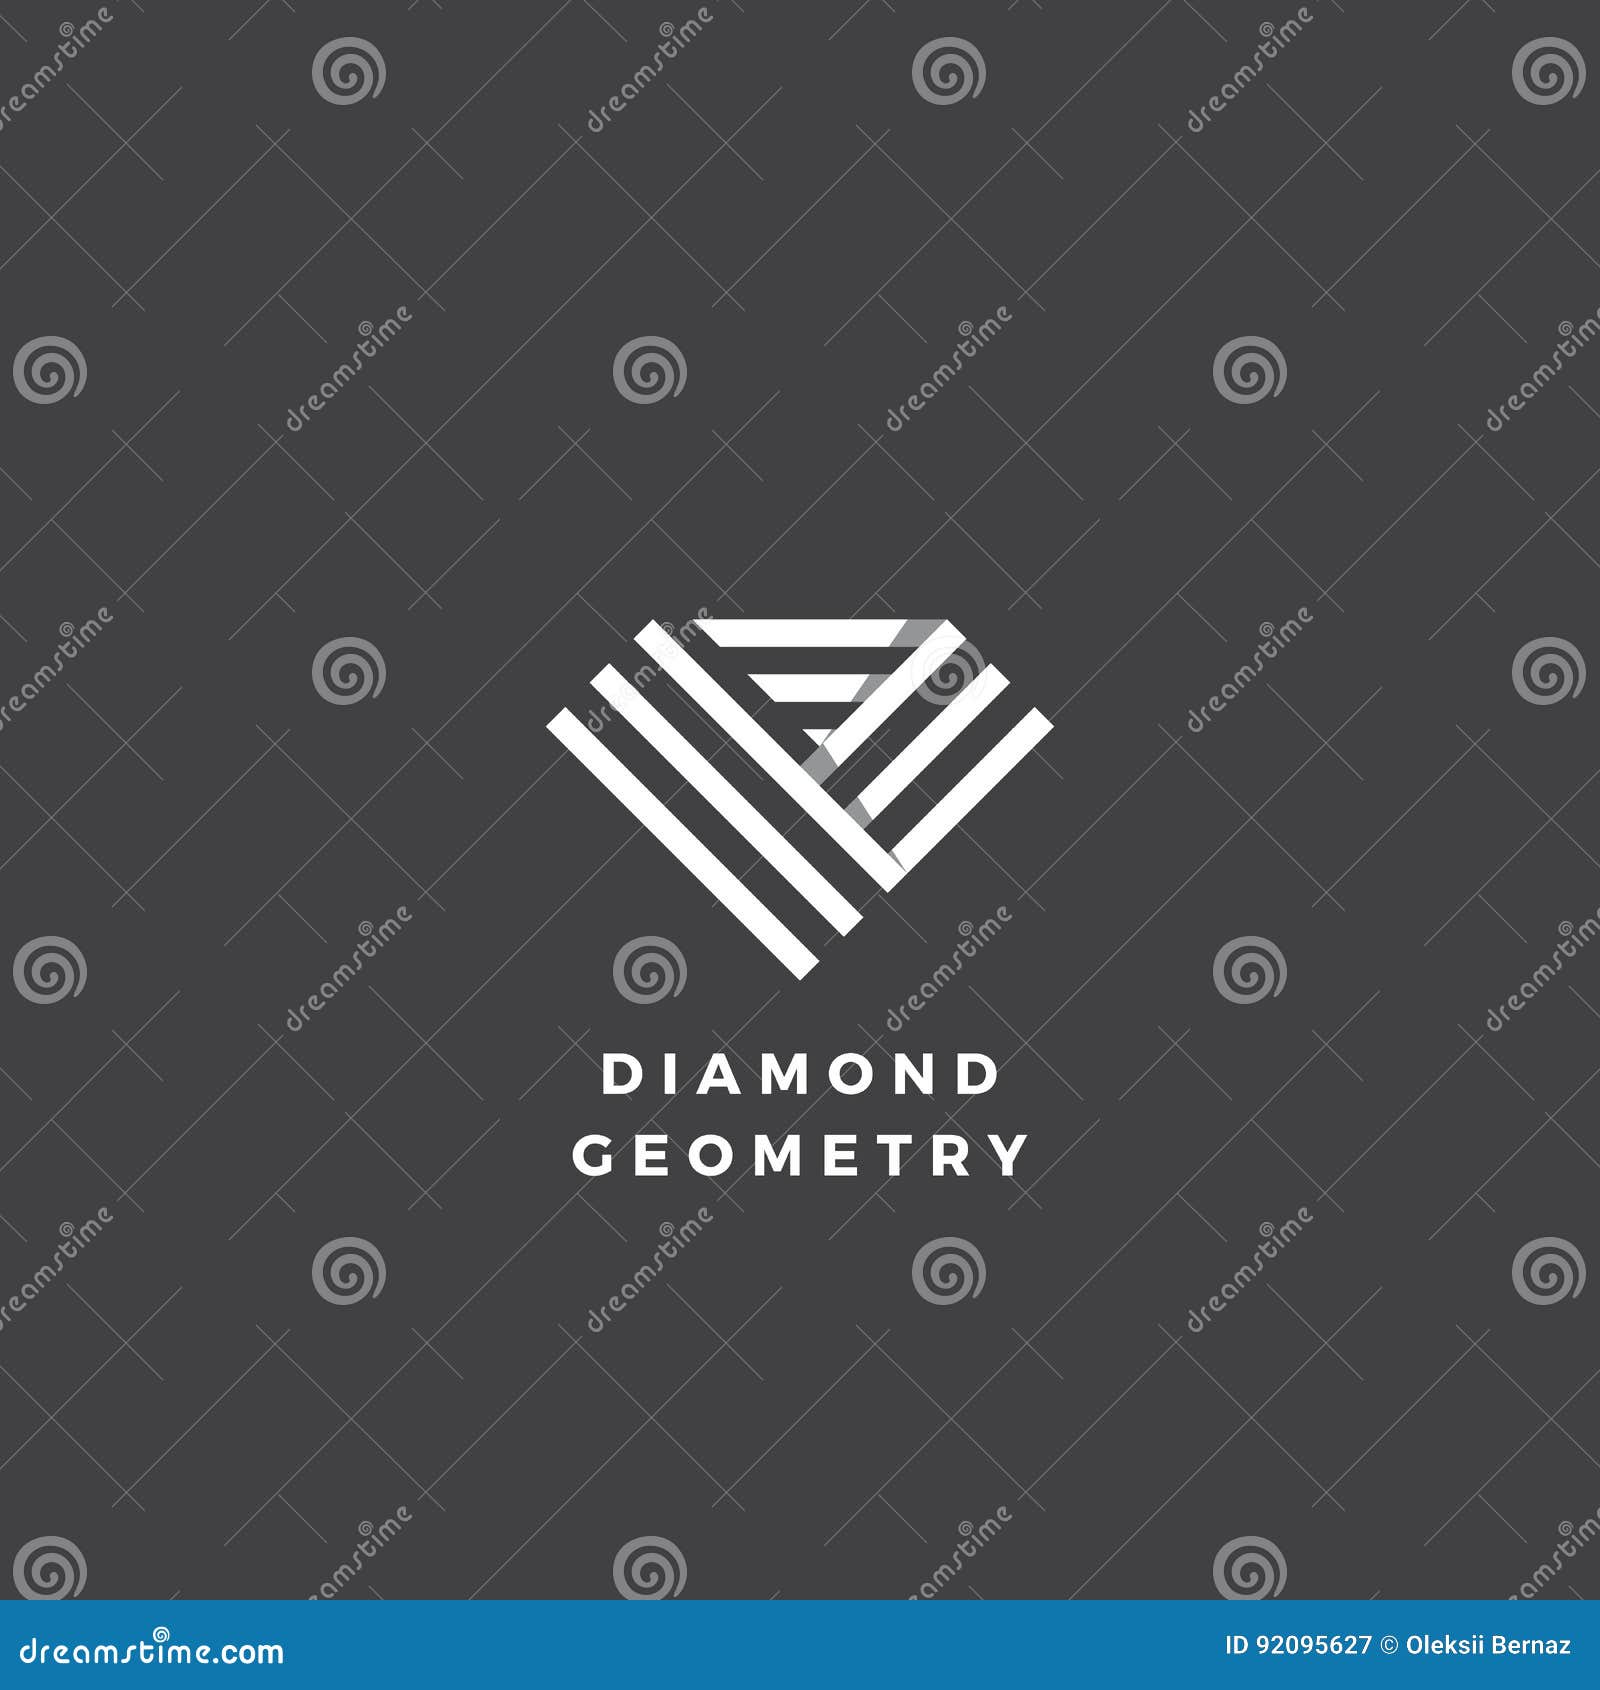 cone abstrato do símbolo do sinal do logotipo da forma do diamante